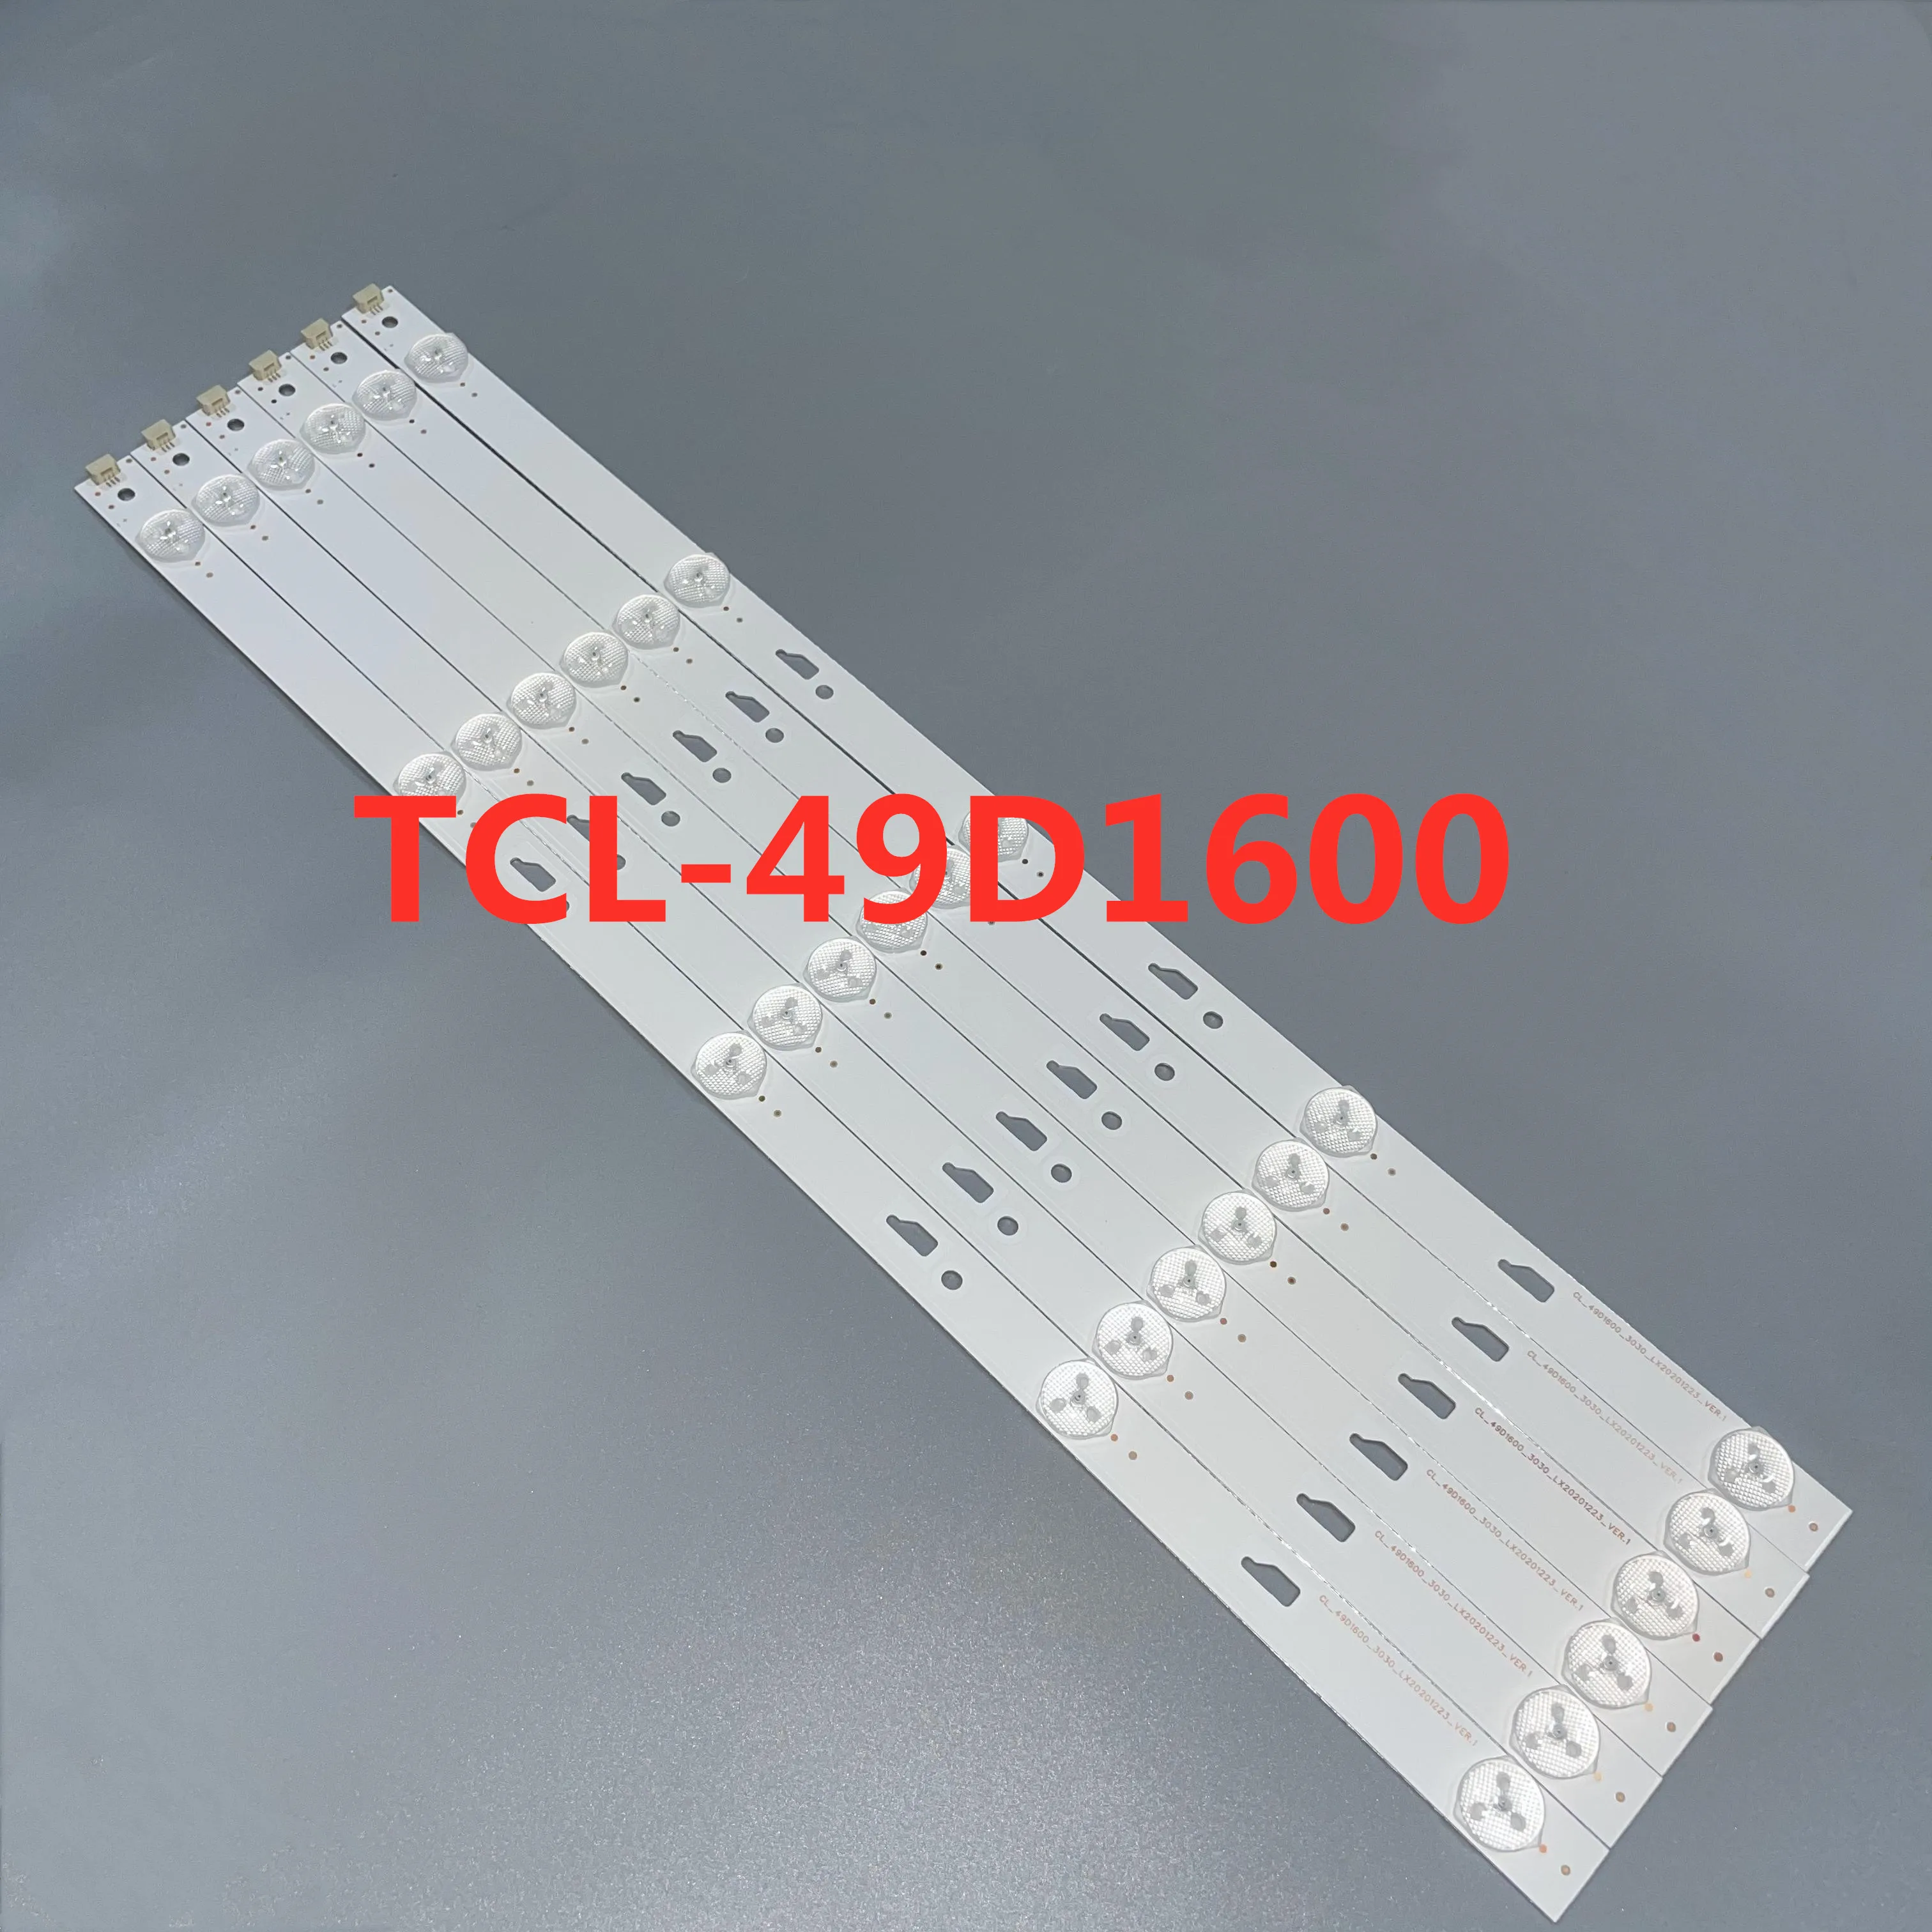 40-50PCS/LOT LED STRIP 49U3600C 49U2200 49L26CNC 47.5CM 5LED 3V LCD Light Bar 4C-LB490T-TH7 TCL-49D1600-3030 led tv backlight